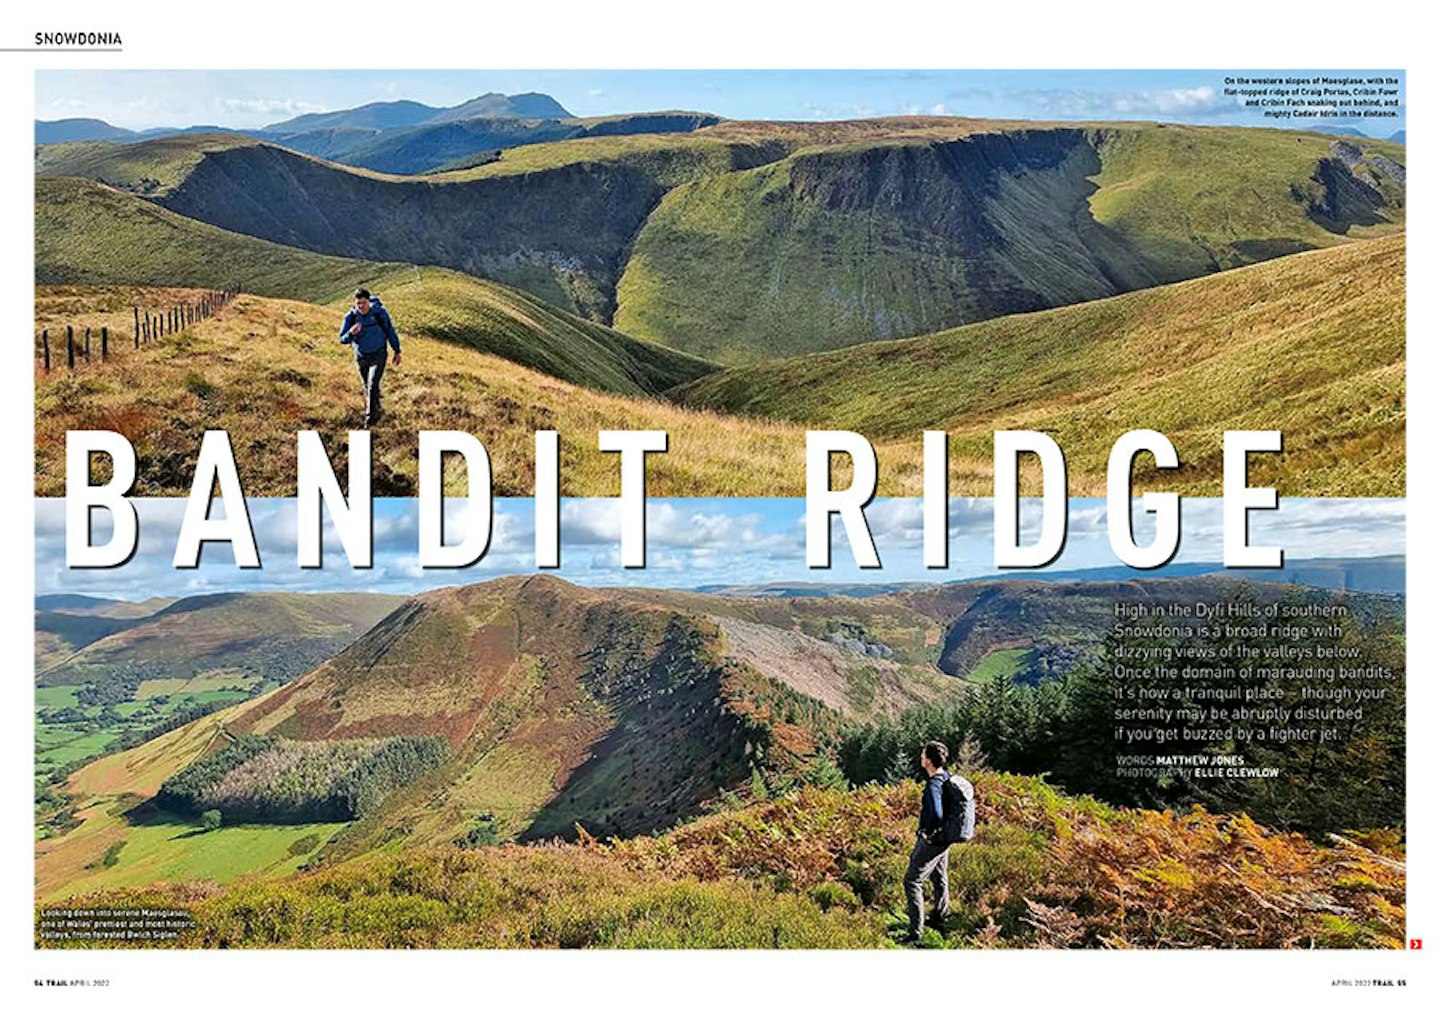 Bandit Ridge